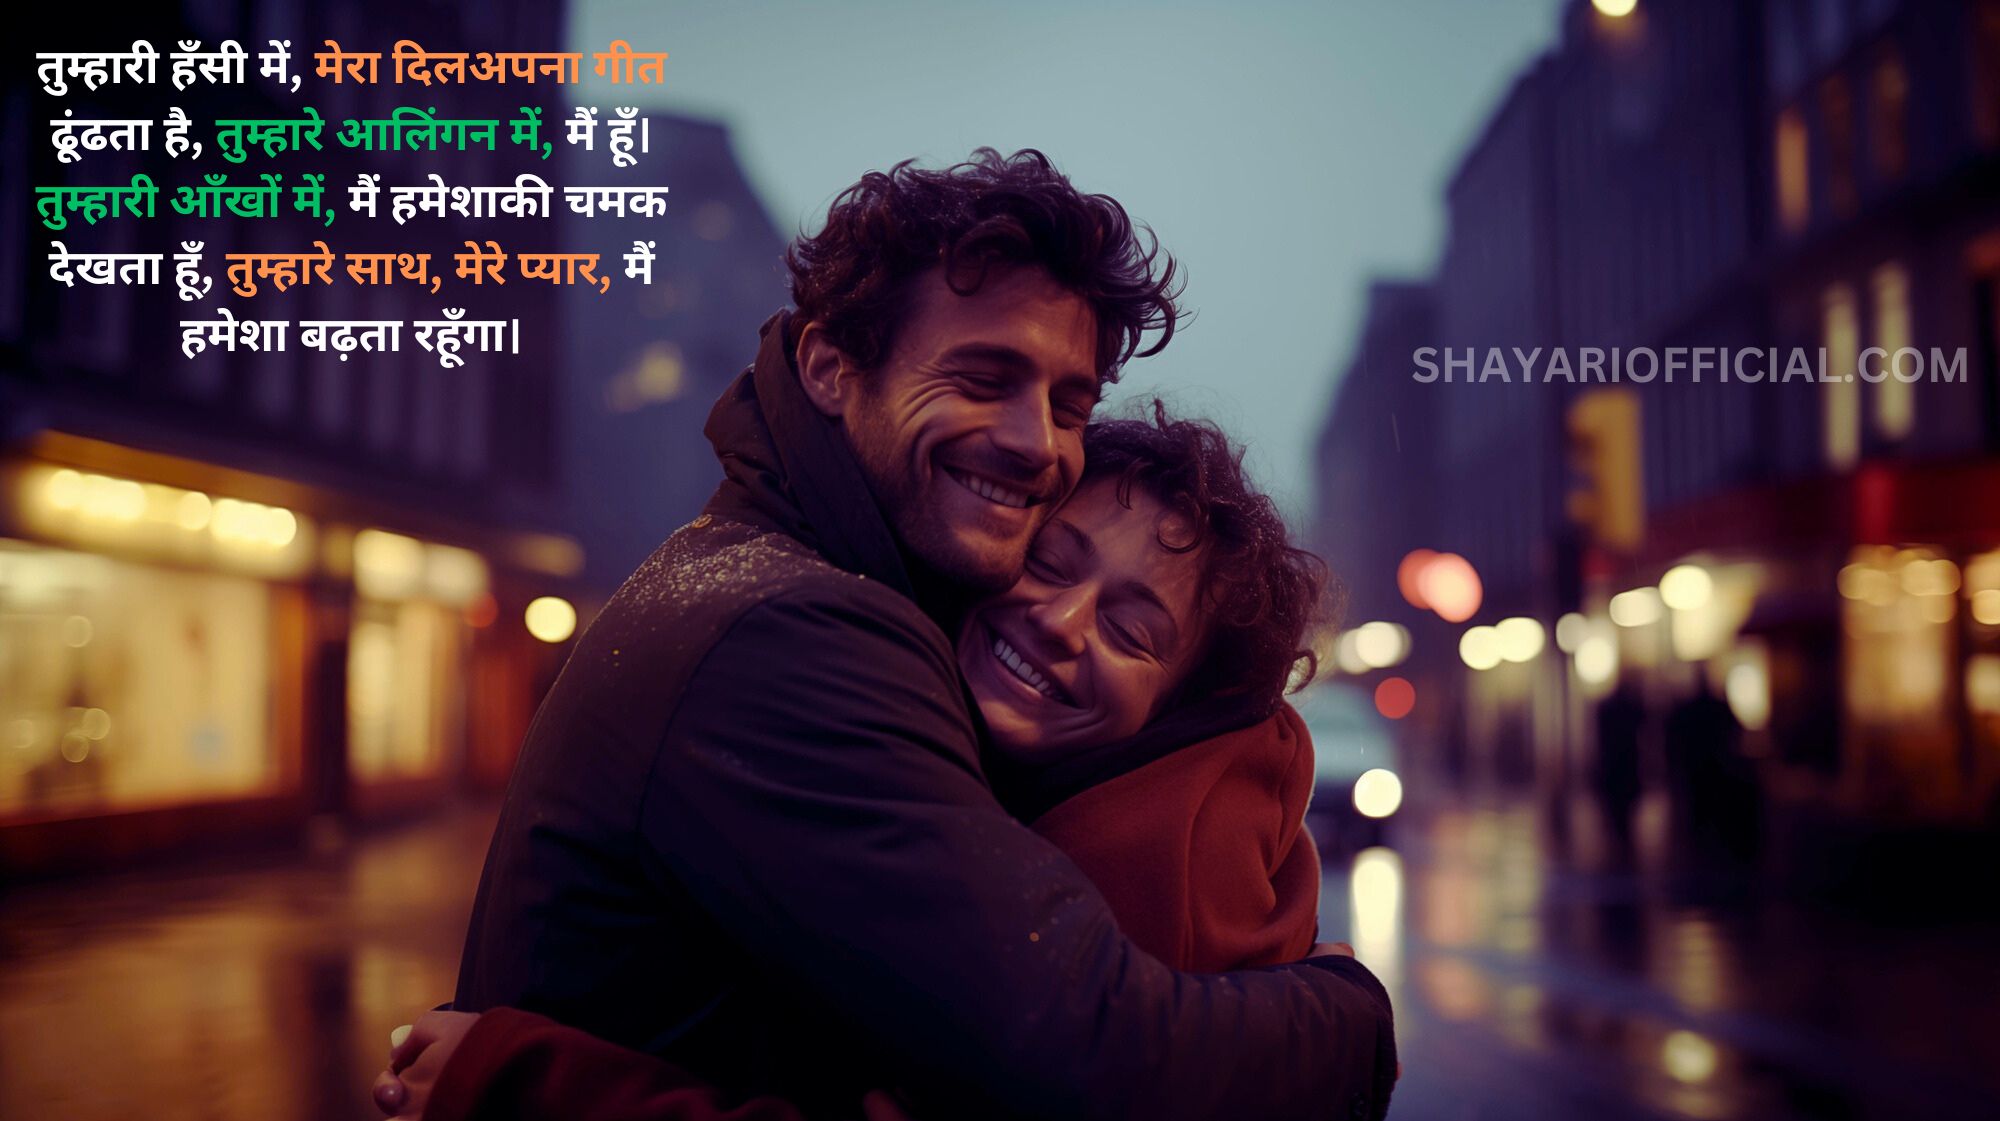 Romantic Shayari For GF